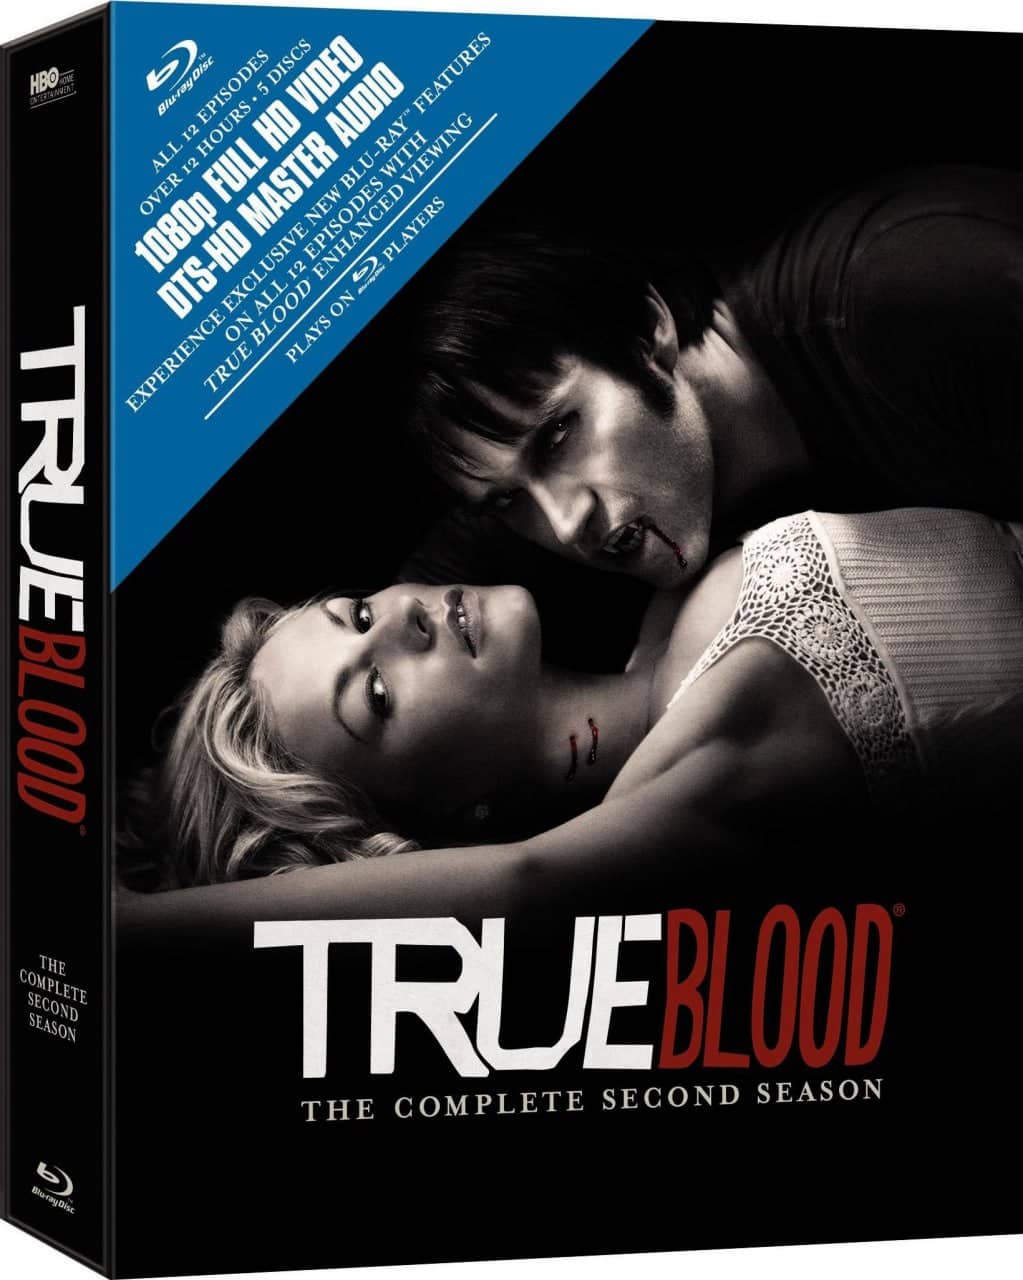 【在线免和谐】真爱如血 第二季 True Blood Season 2 (2009)